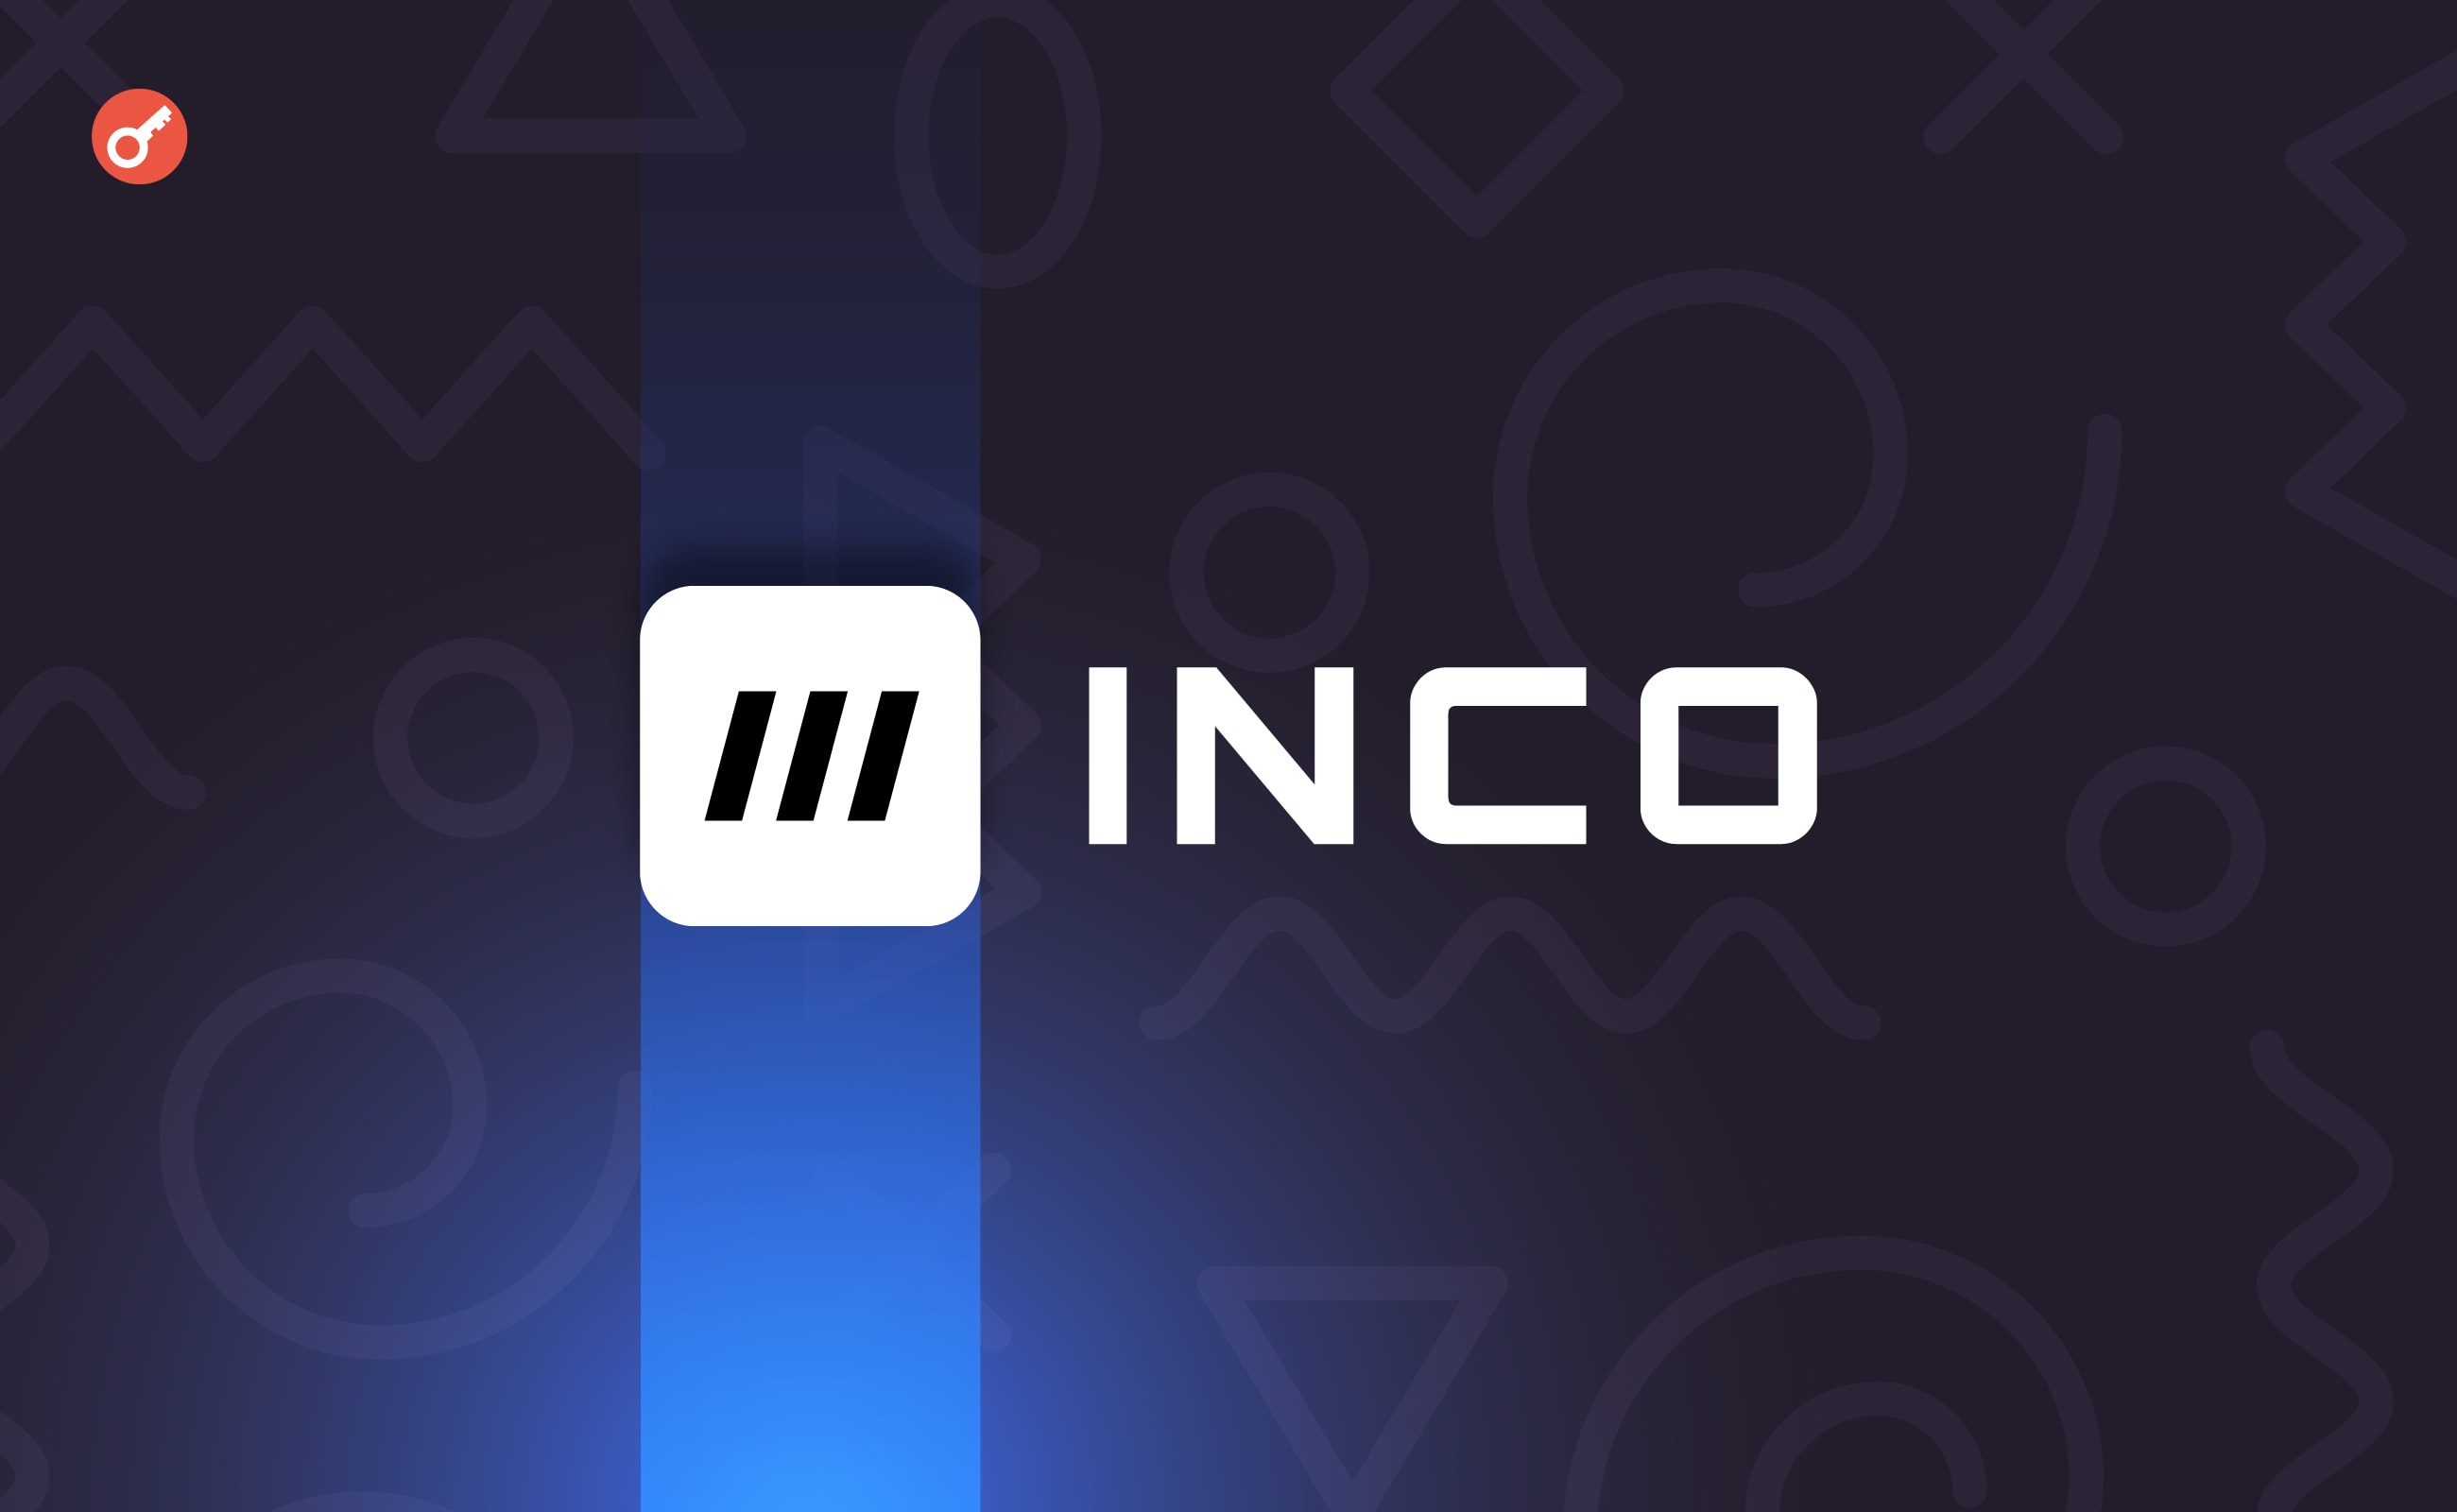 Inco залучила $4,5 млн інвестицій за участю Polygon Ventures. Головний колаж новини.